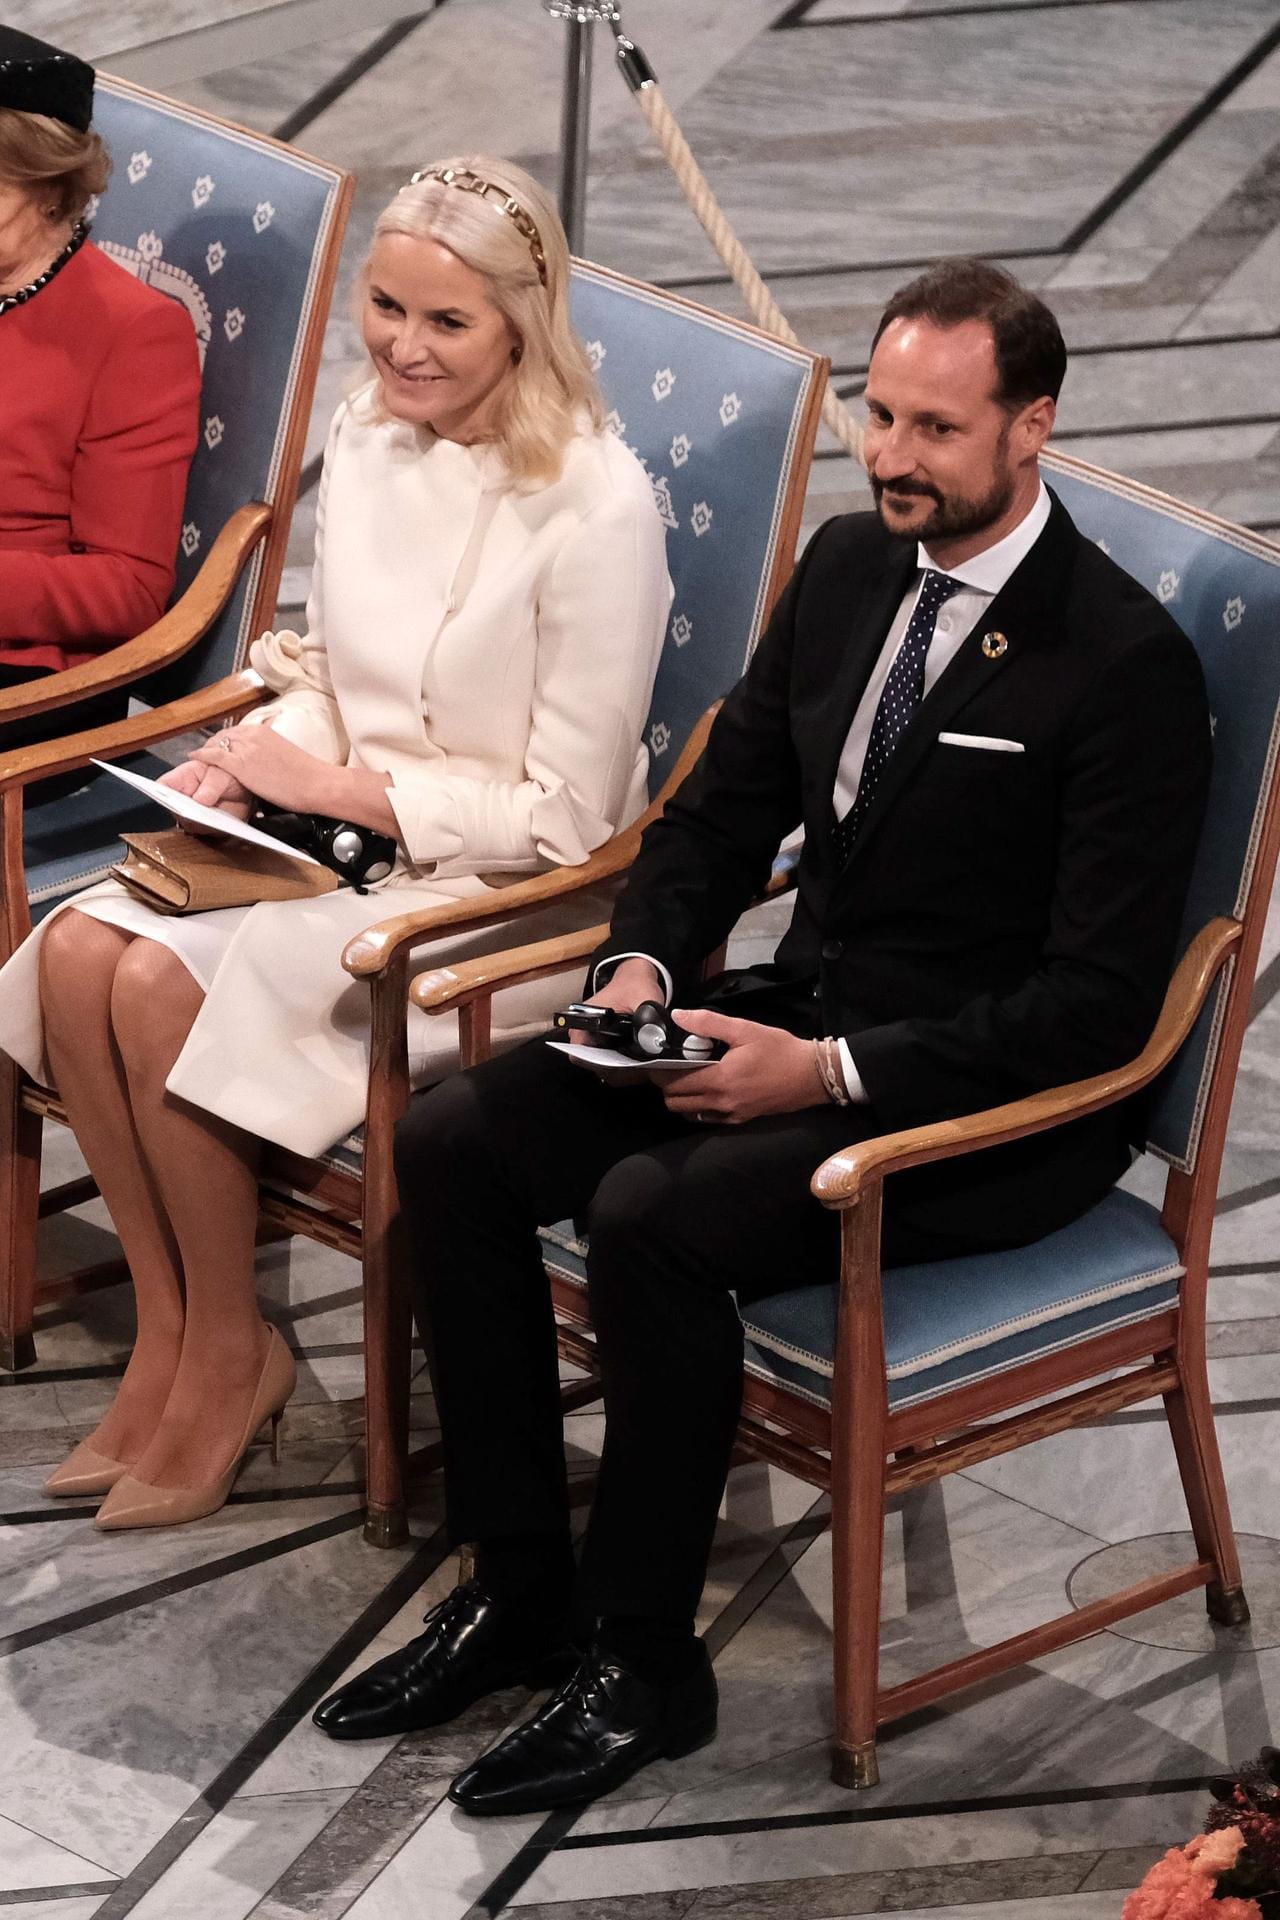 Für Norwegens Kronprinzessin Mette Marit ist es der erste internationale Auftritt nachdem sie wegen der Epstein-Affäre in die Schlagzeilen geriet und öffentlich bekundete, ihre Verbindung zu dem Mann zu bereuen. Ihr Ehemann Prinz Haakon sitzt neben ihr.